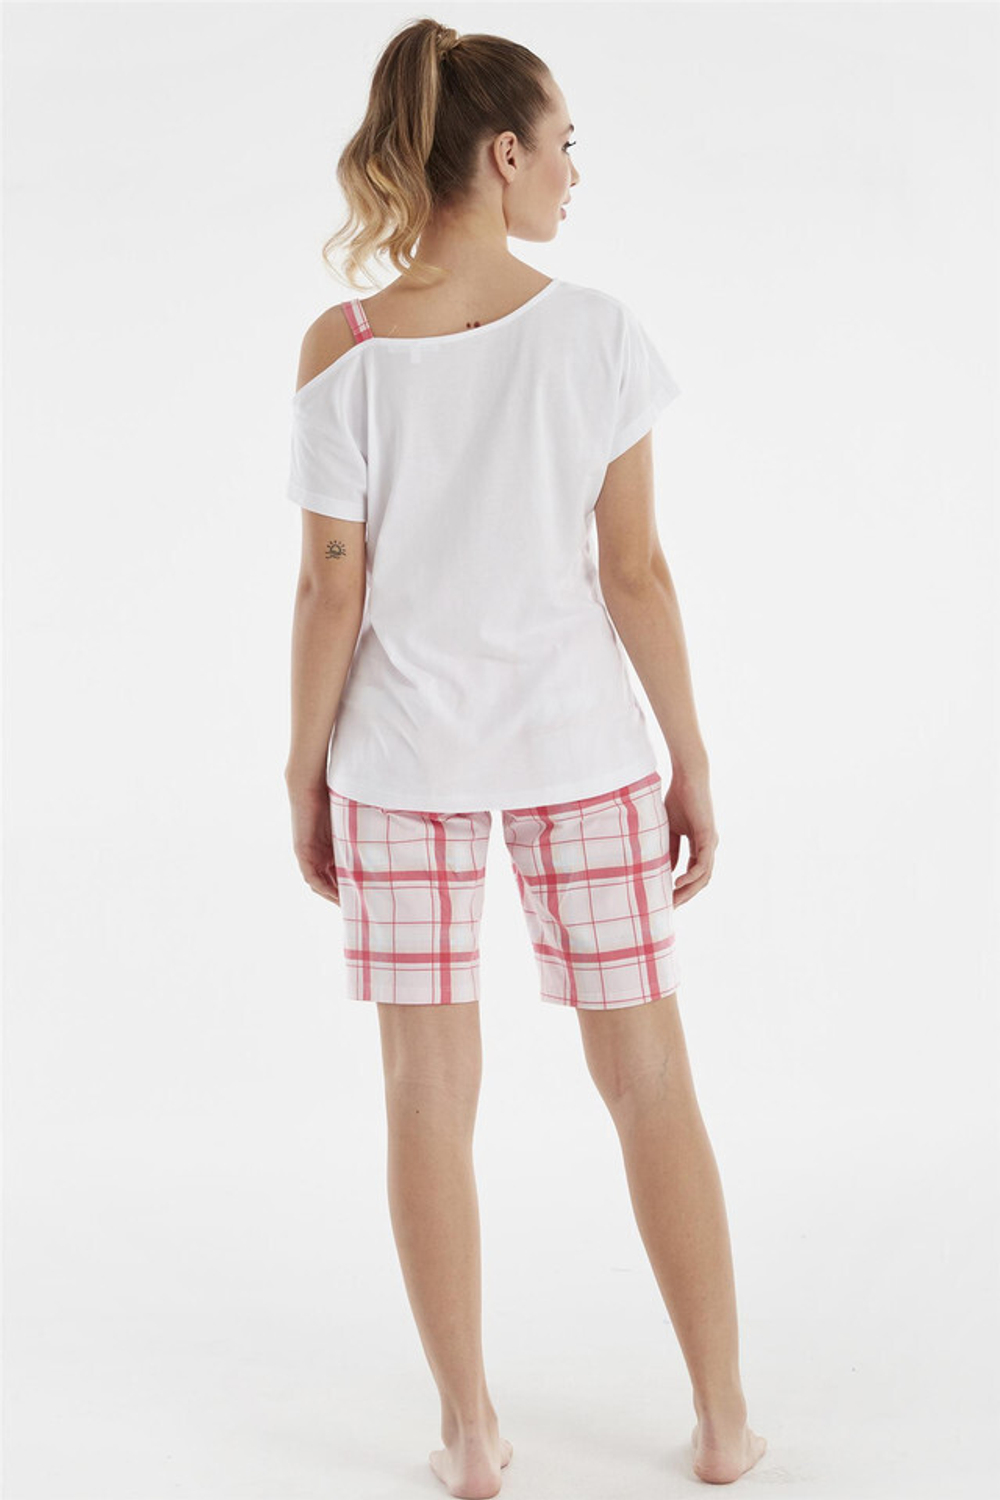 RELAX MODE - Женская пижама с шортами - 13117